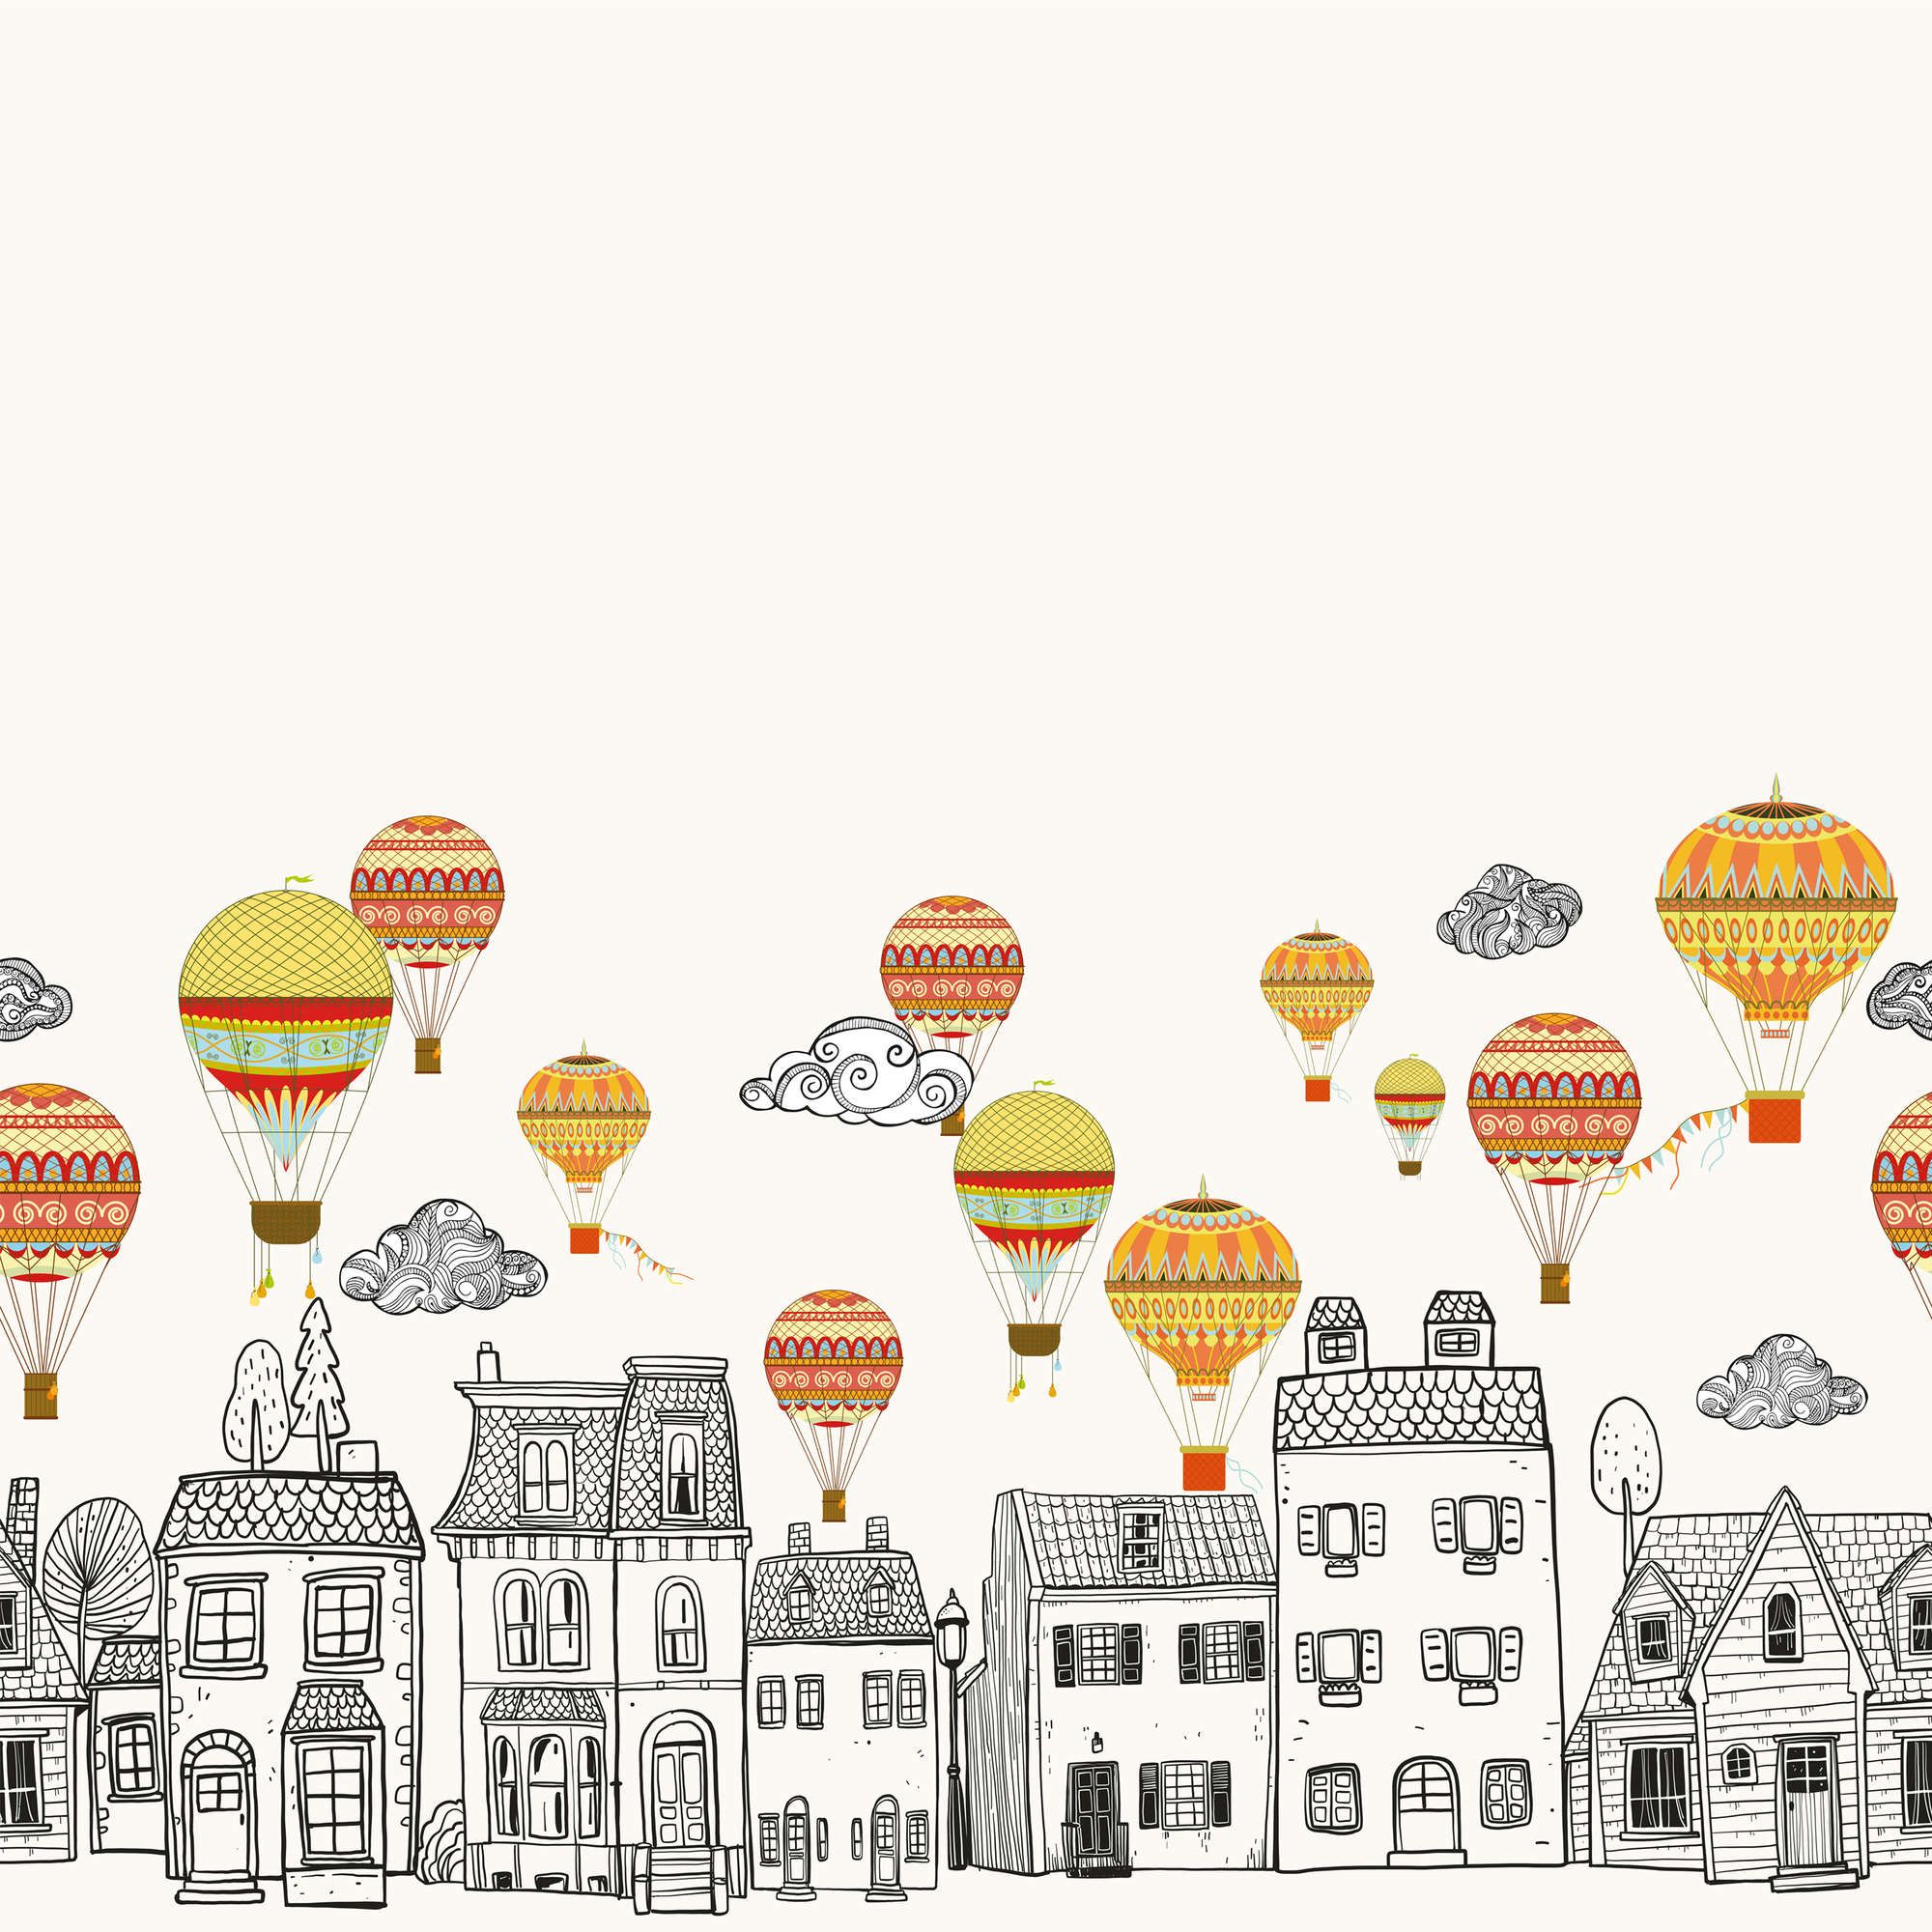             Kleine stad met heteluchtballonnen behang - glad & mat vlies
        